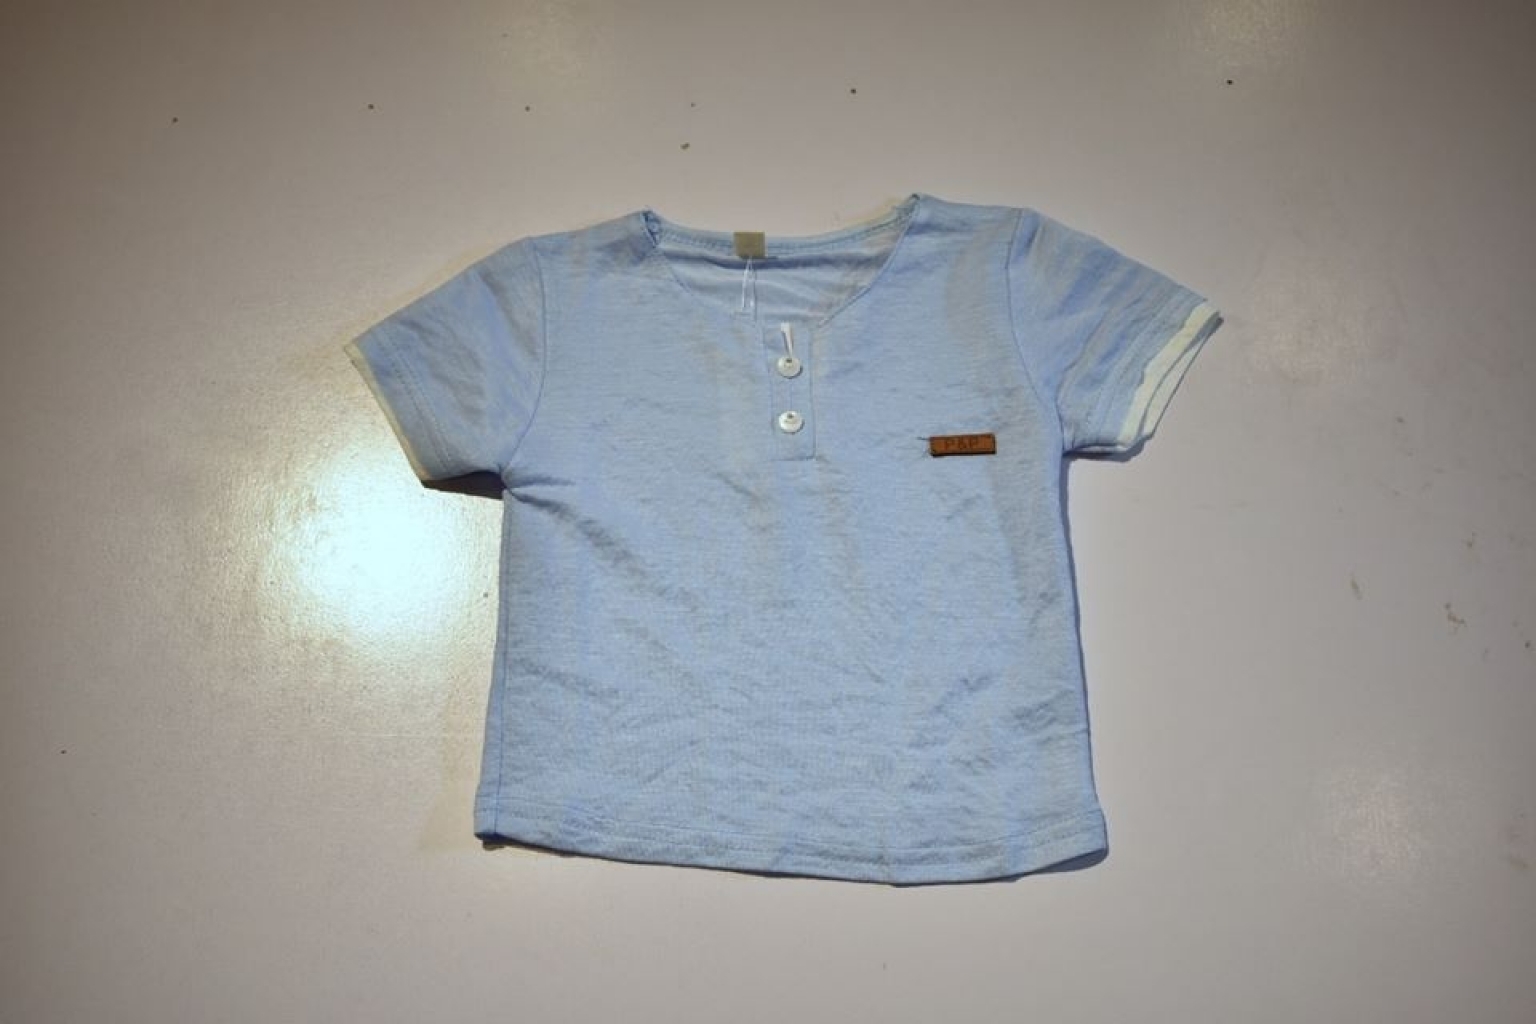 Buy Sky blue Boys T-Shirt in Pakistan | online shopping in Pakistan